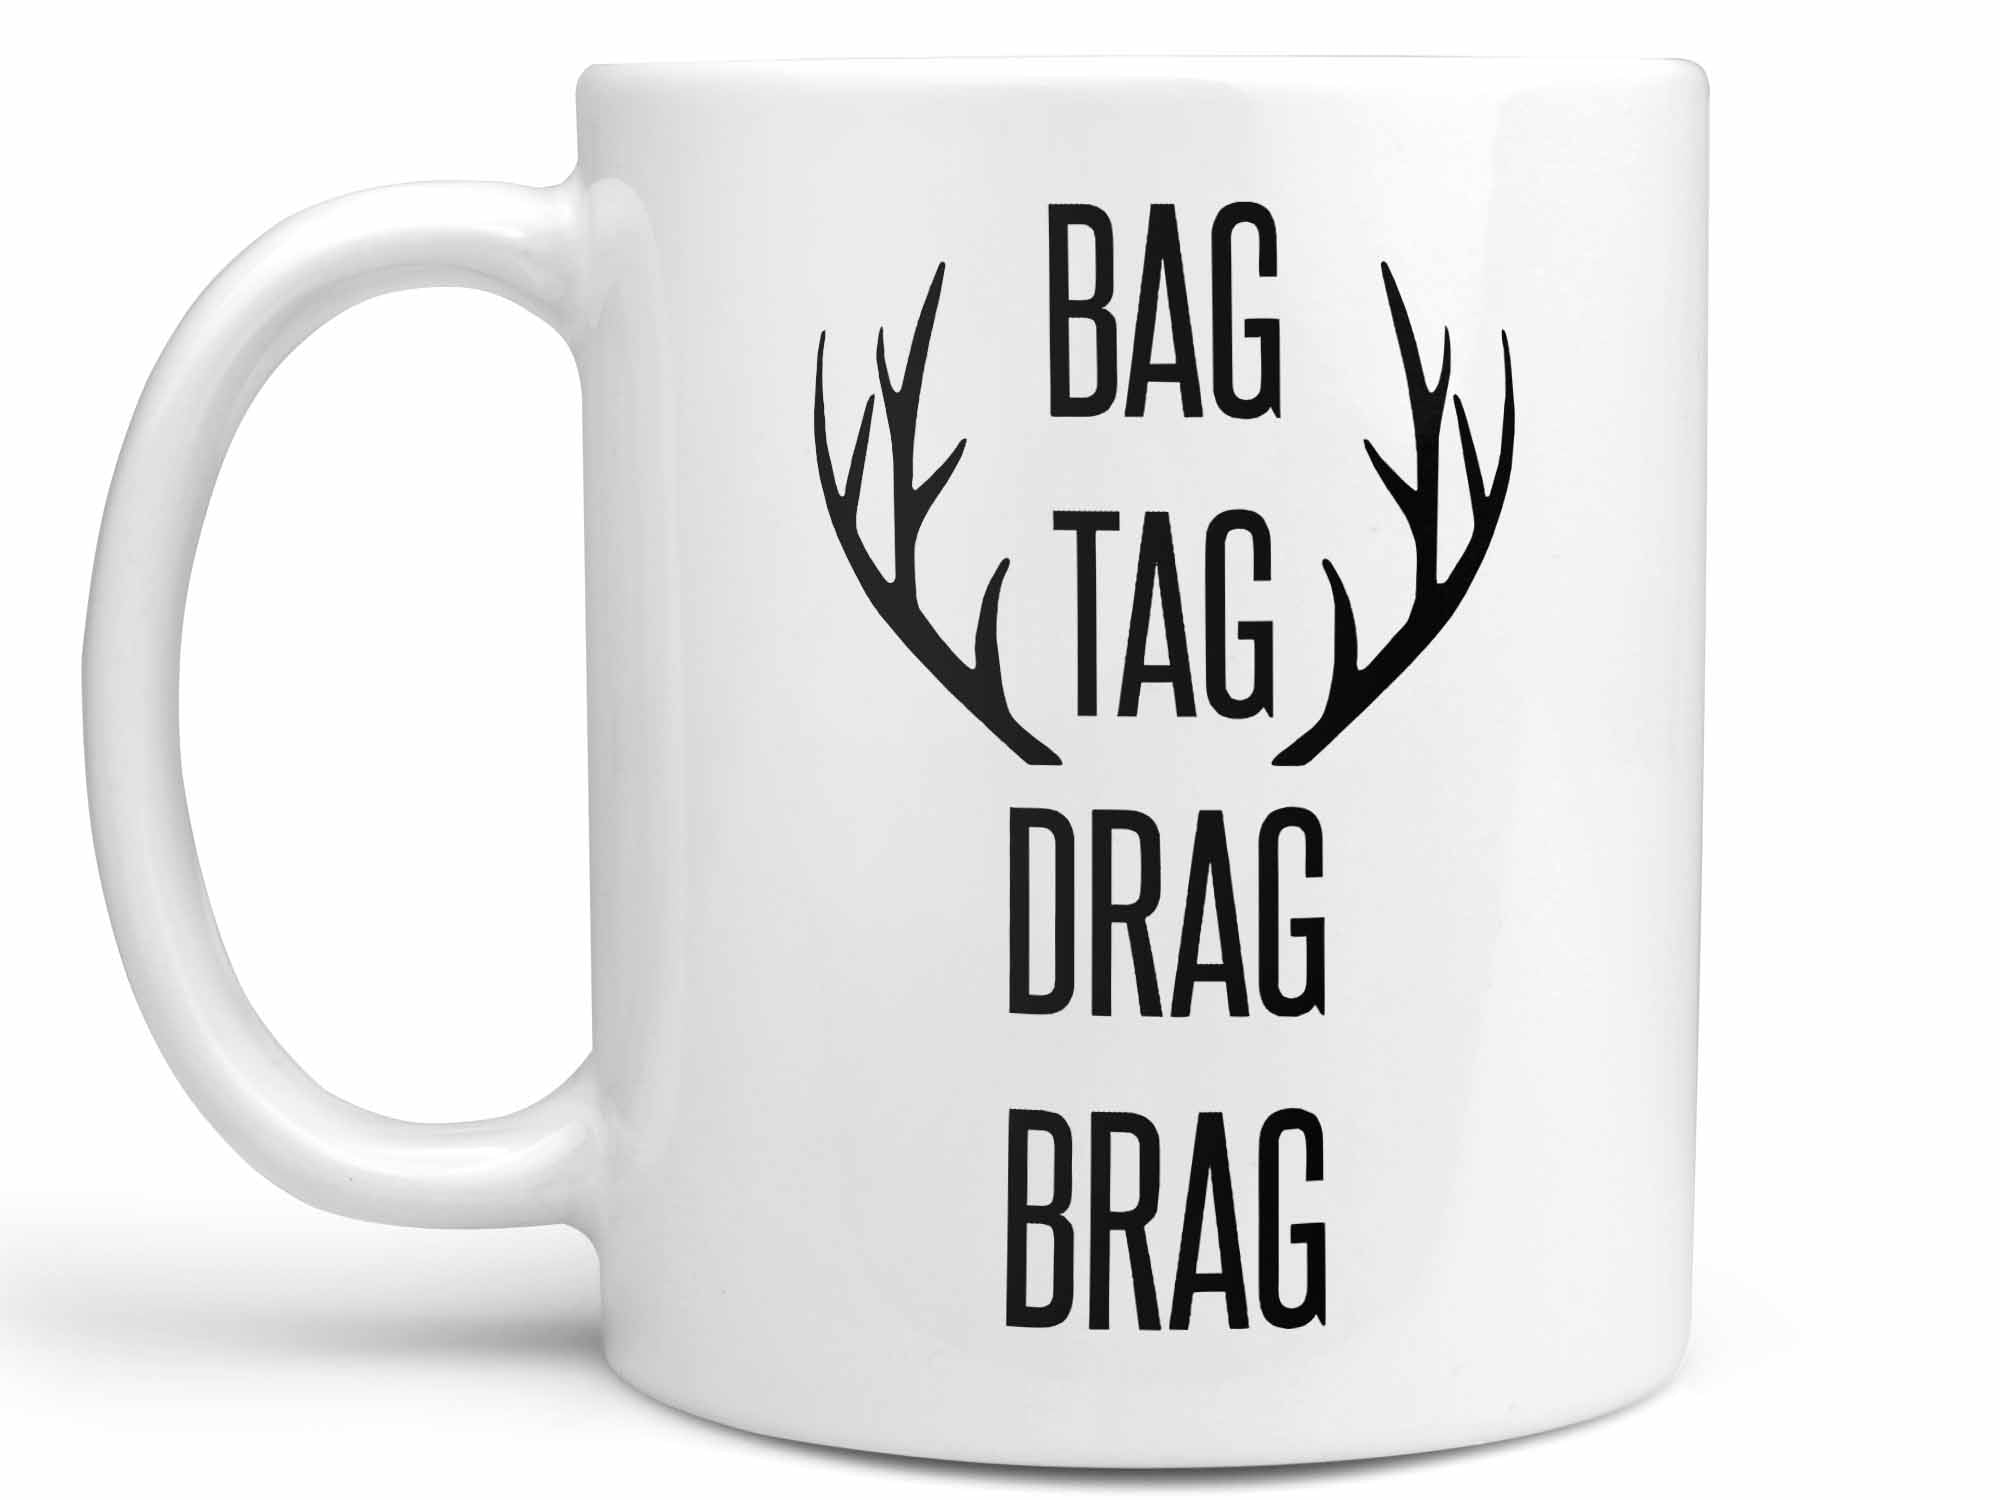 Bag Tag Drag Brag Coffee Mug,Coffee Mugs Never Lie,Coffee Mug